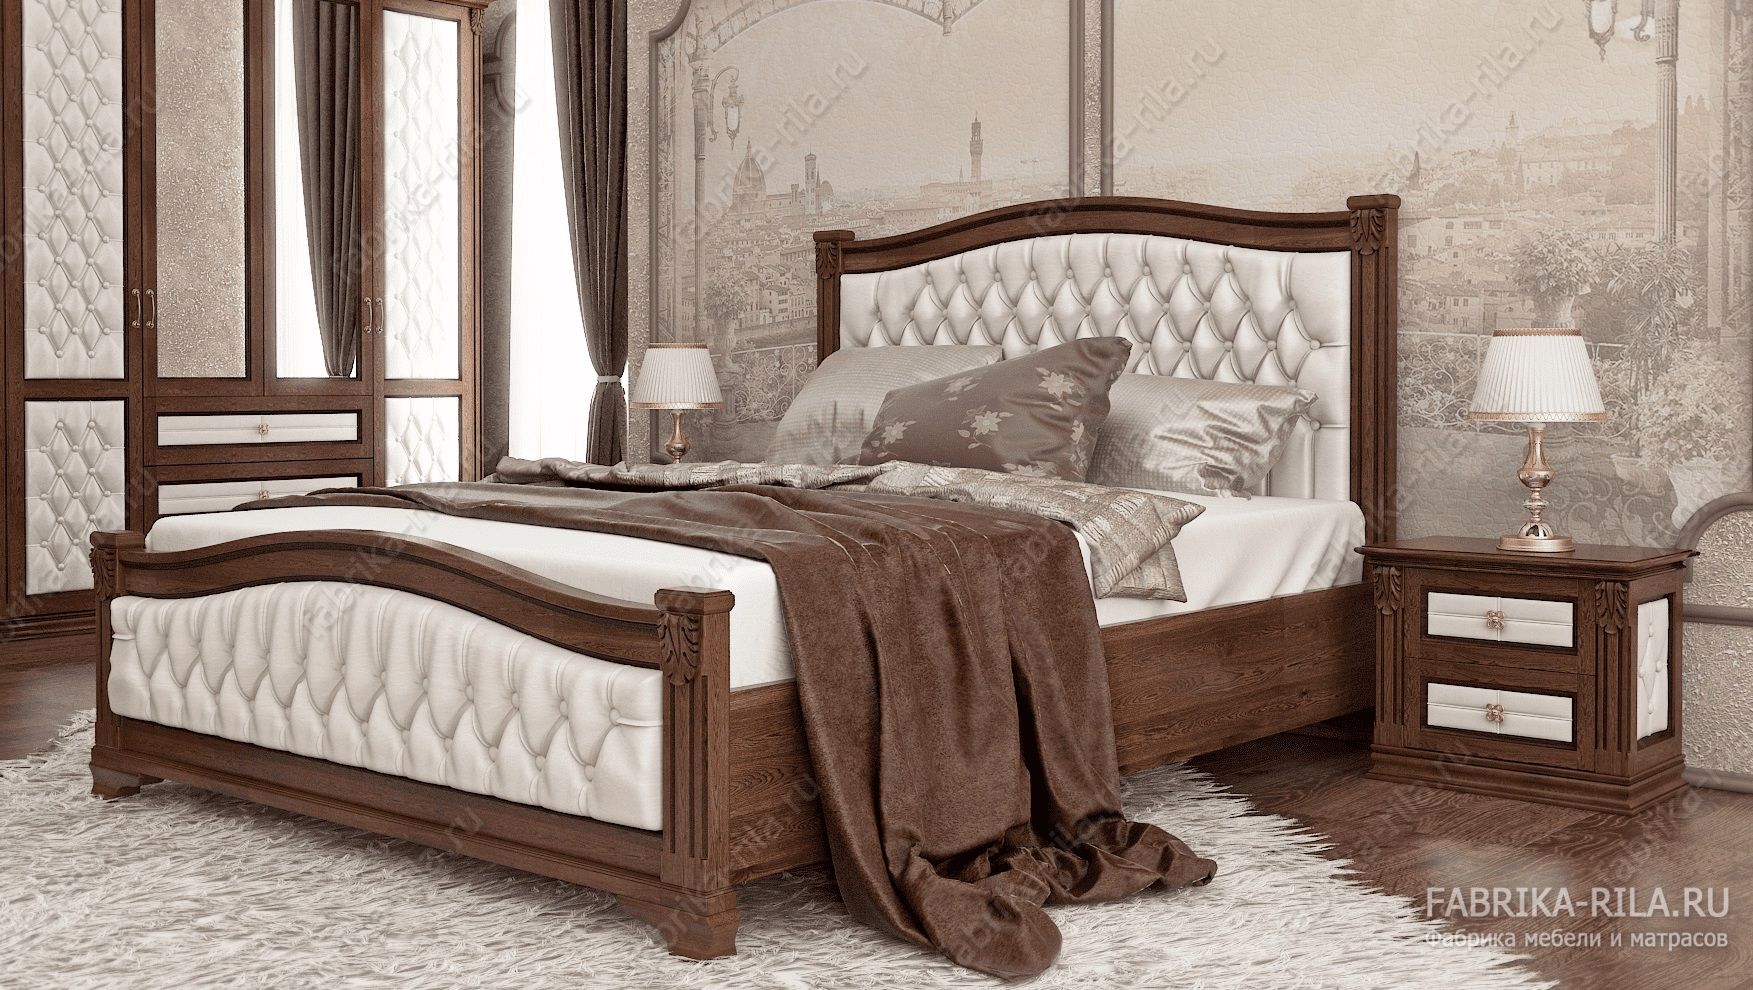 Кровать SONATA 1-MV — 160x190 см. из сосны